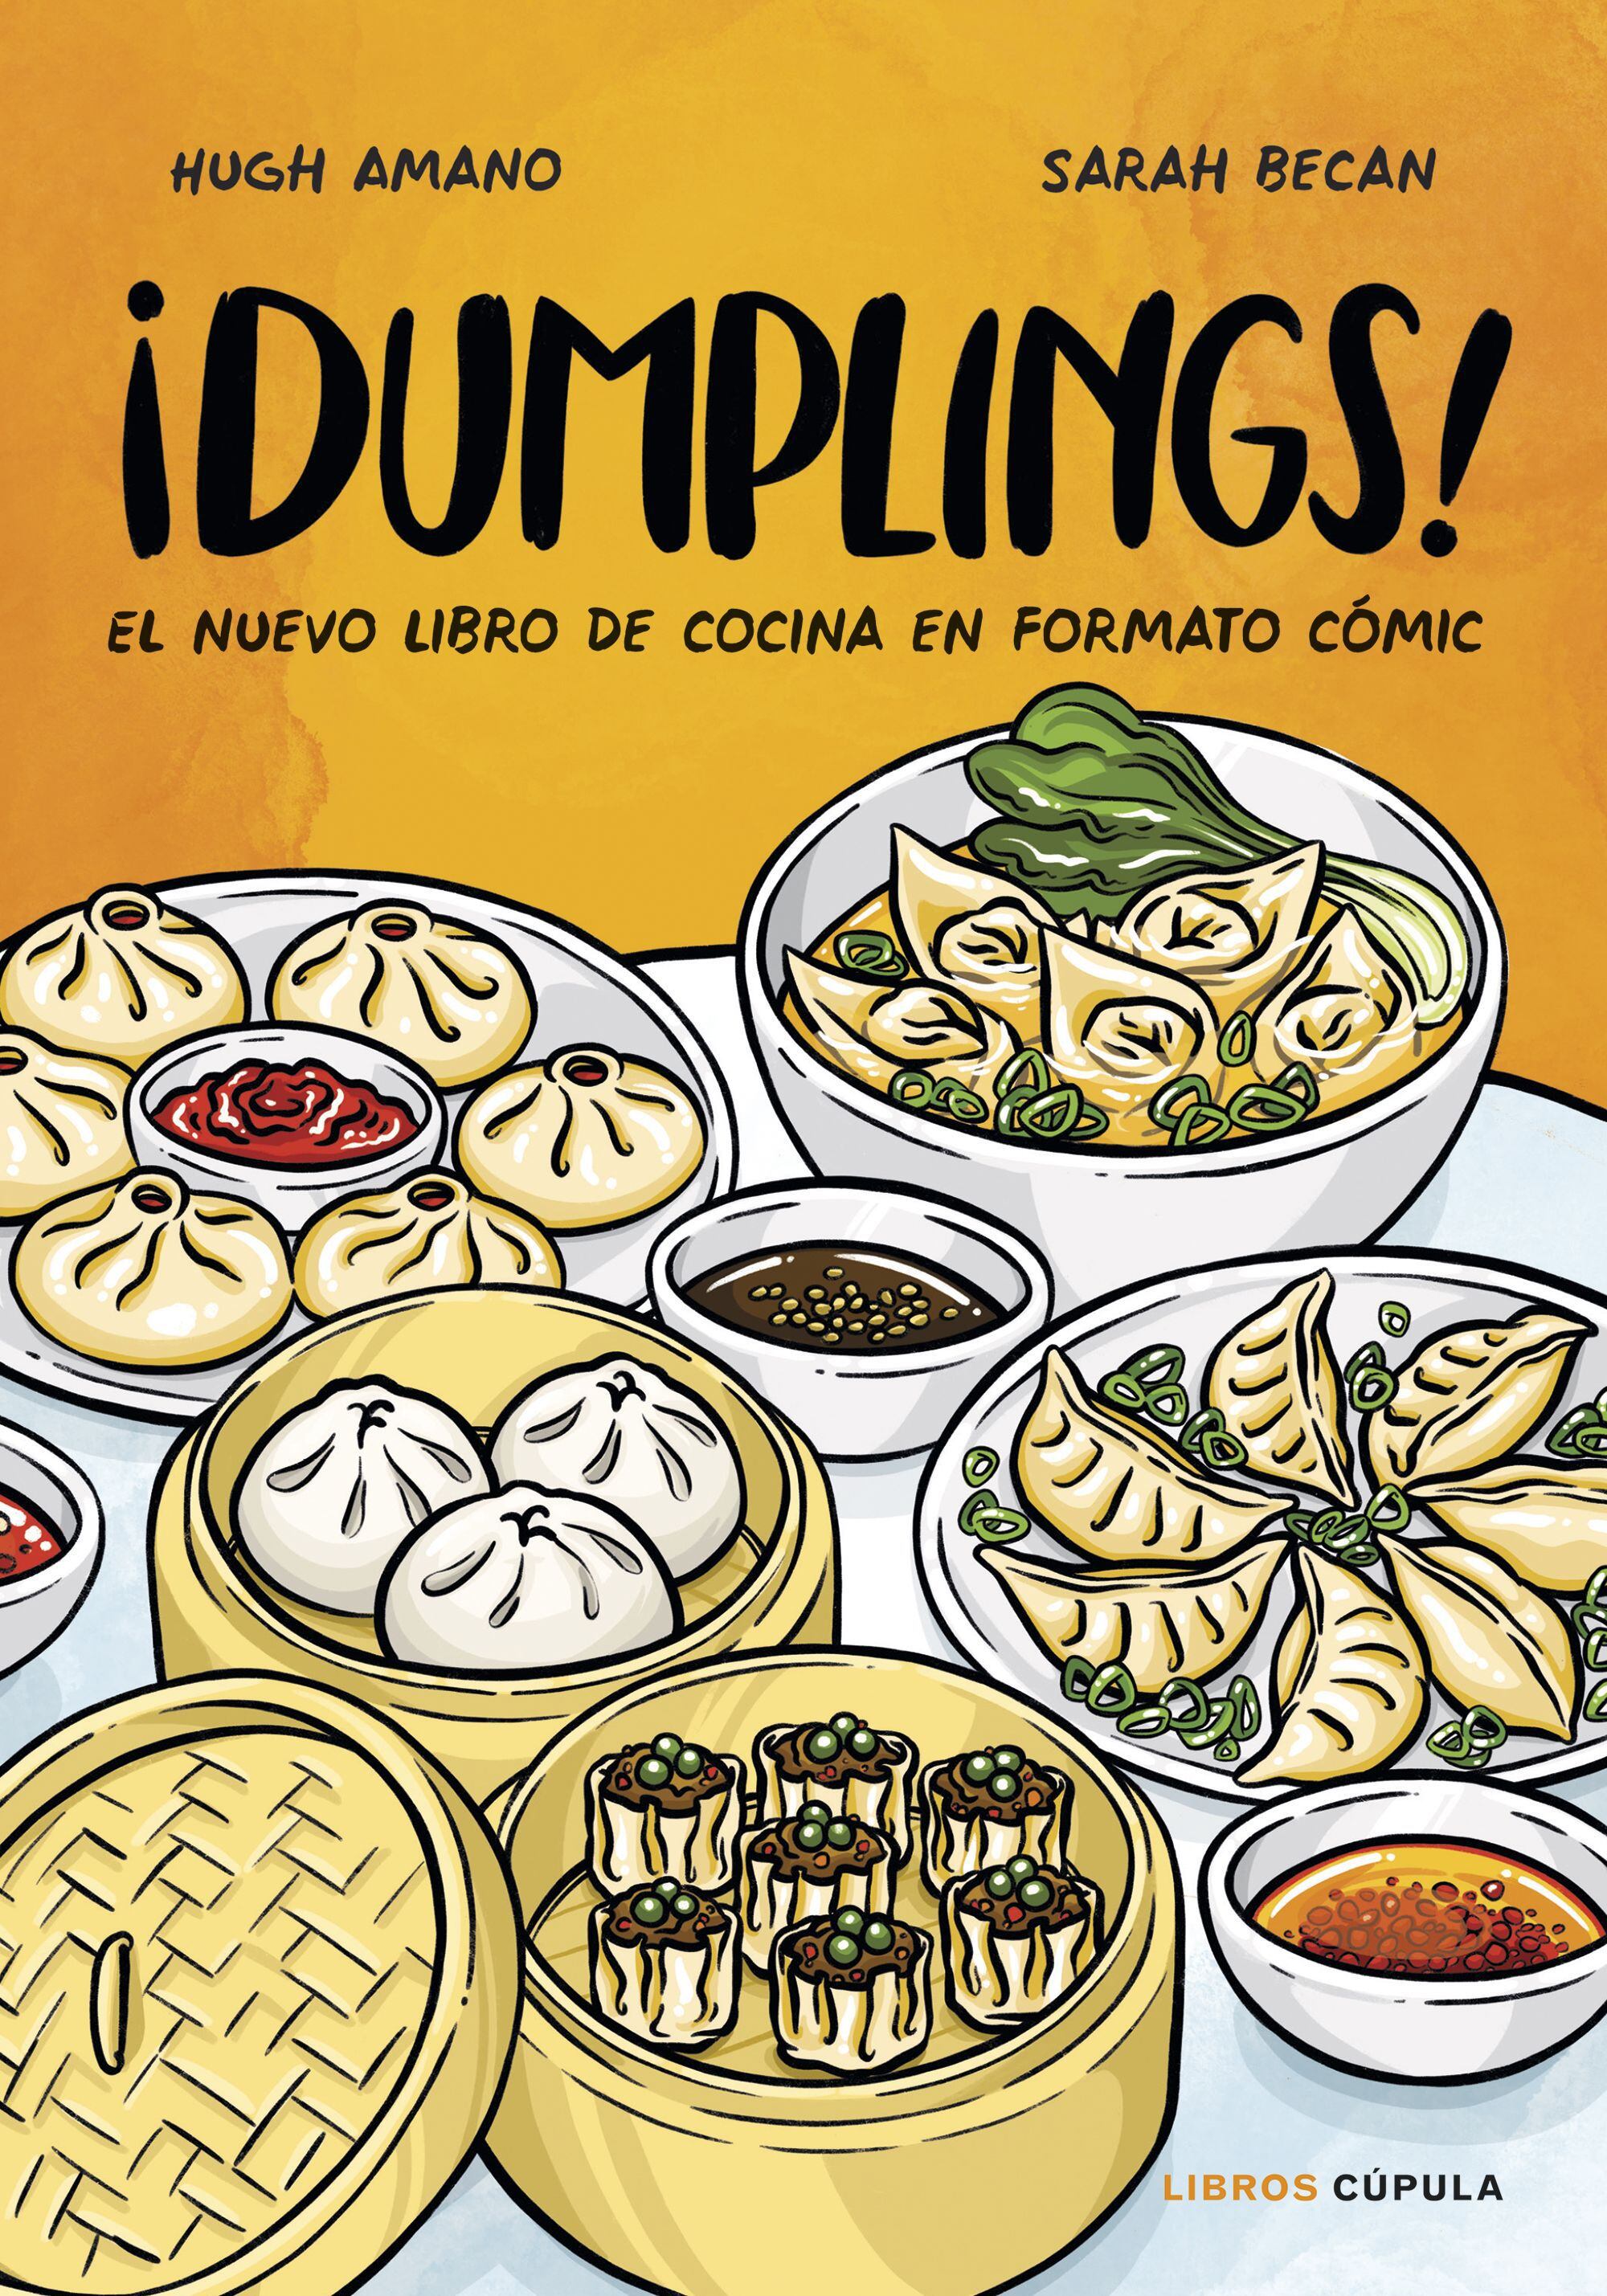 Portada del cómic '¡Dumplings!', de Hugh Amano y Sarah Becan (Libros Cúpula).